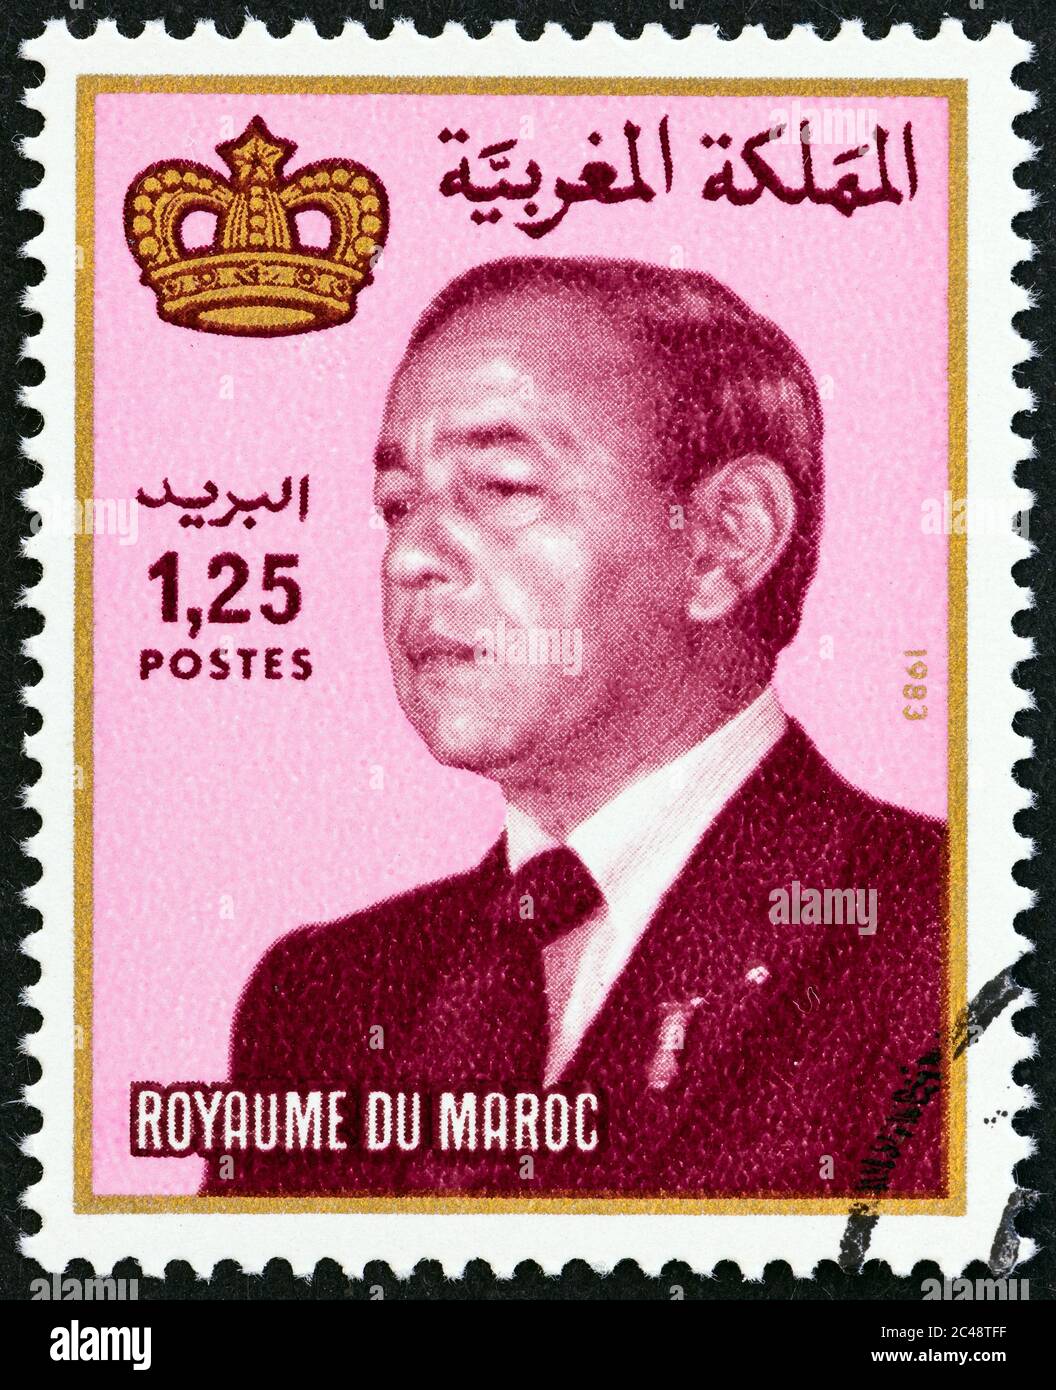 MAROKKO - UM 1984: Eine in Marokko gedruckte Briefmarke zeigt König Hassan II., um 1984. Stockfoto